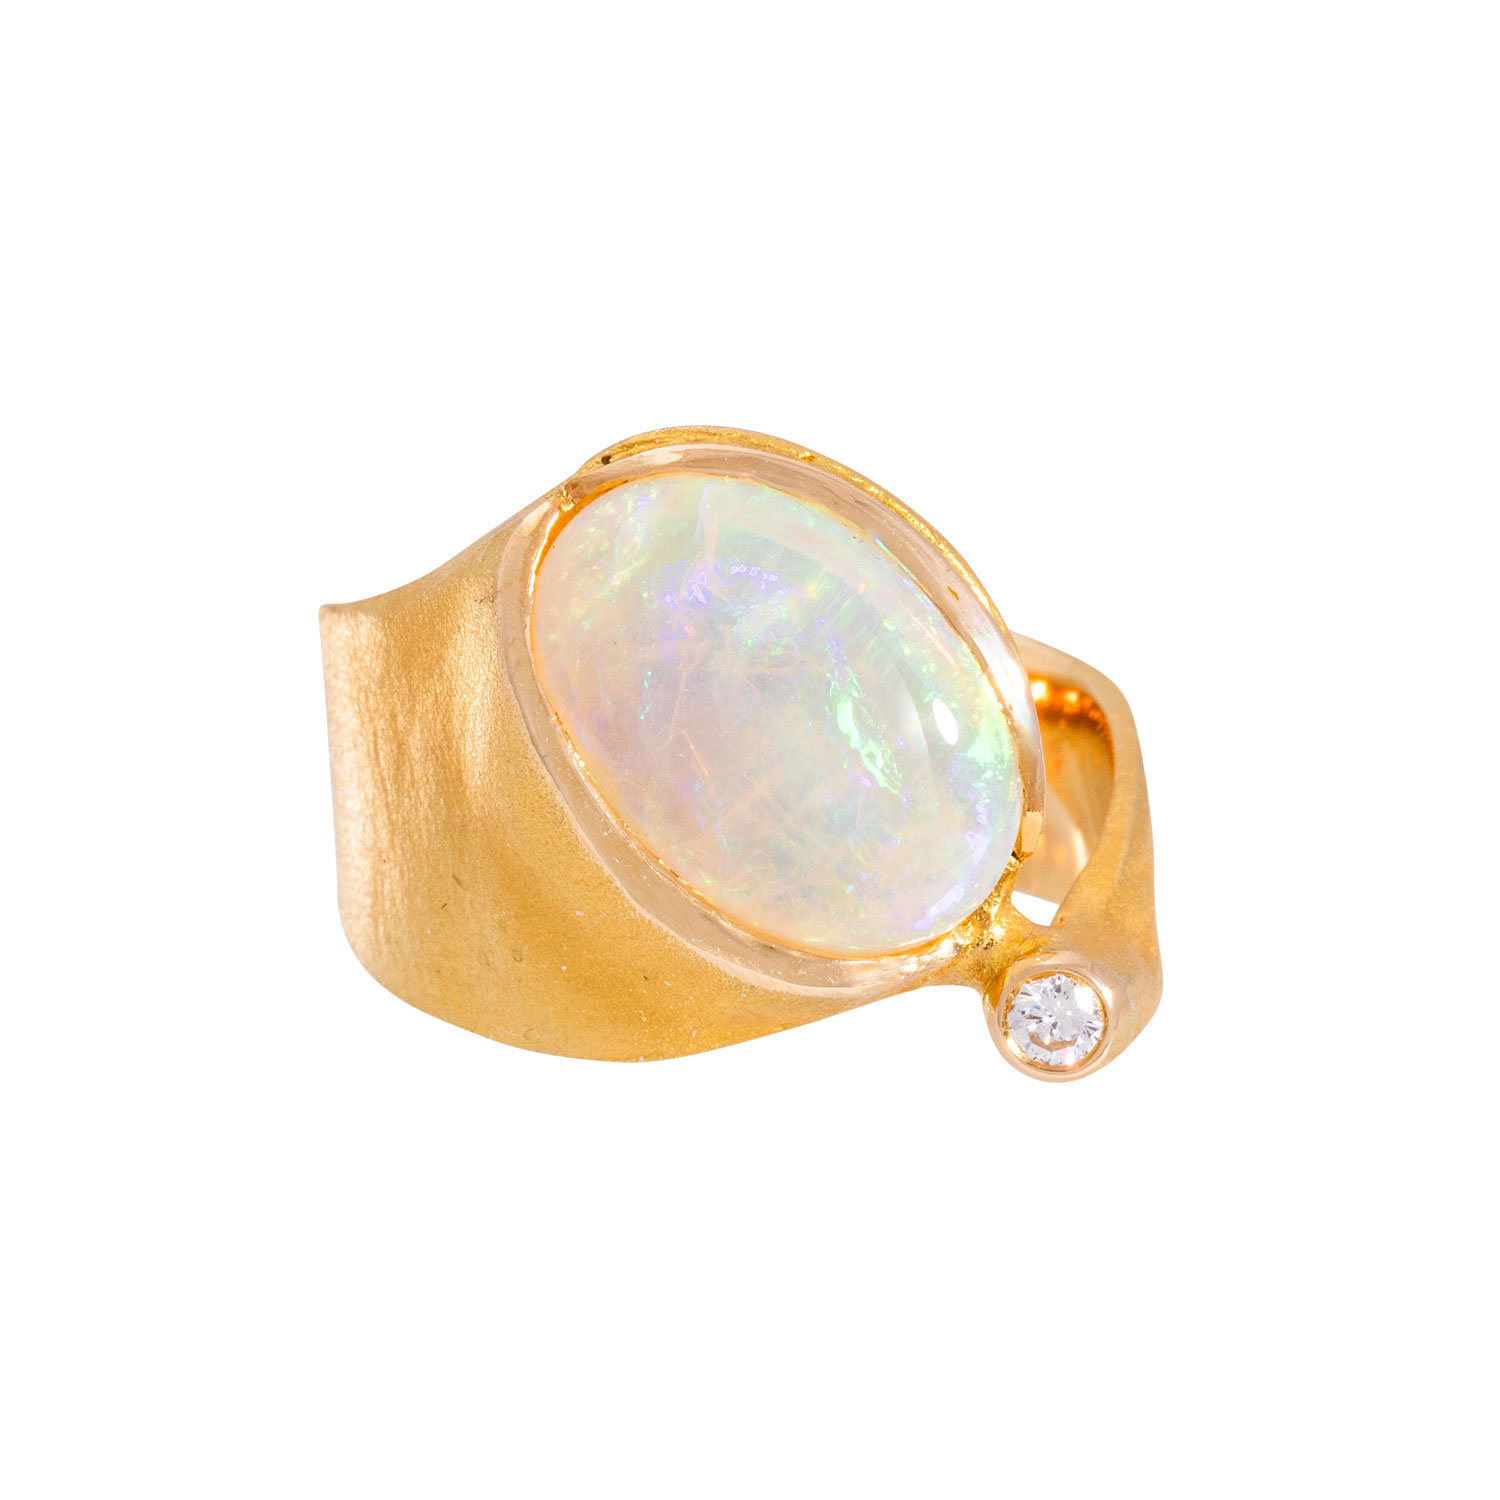 Ring mit Crystalopal und Brillant ca. 0,06 ct (punziert), - Image 2 of 4